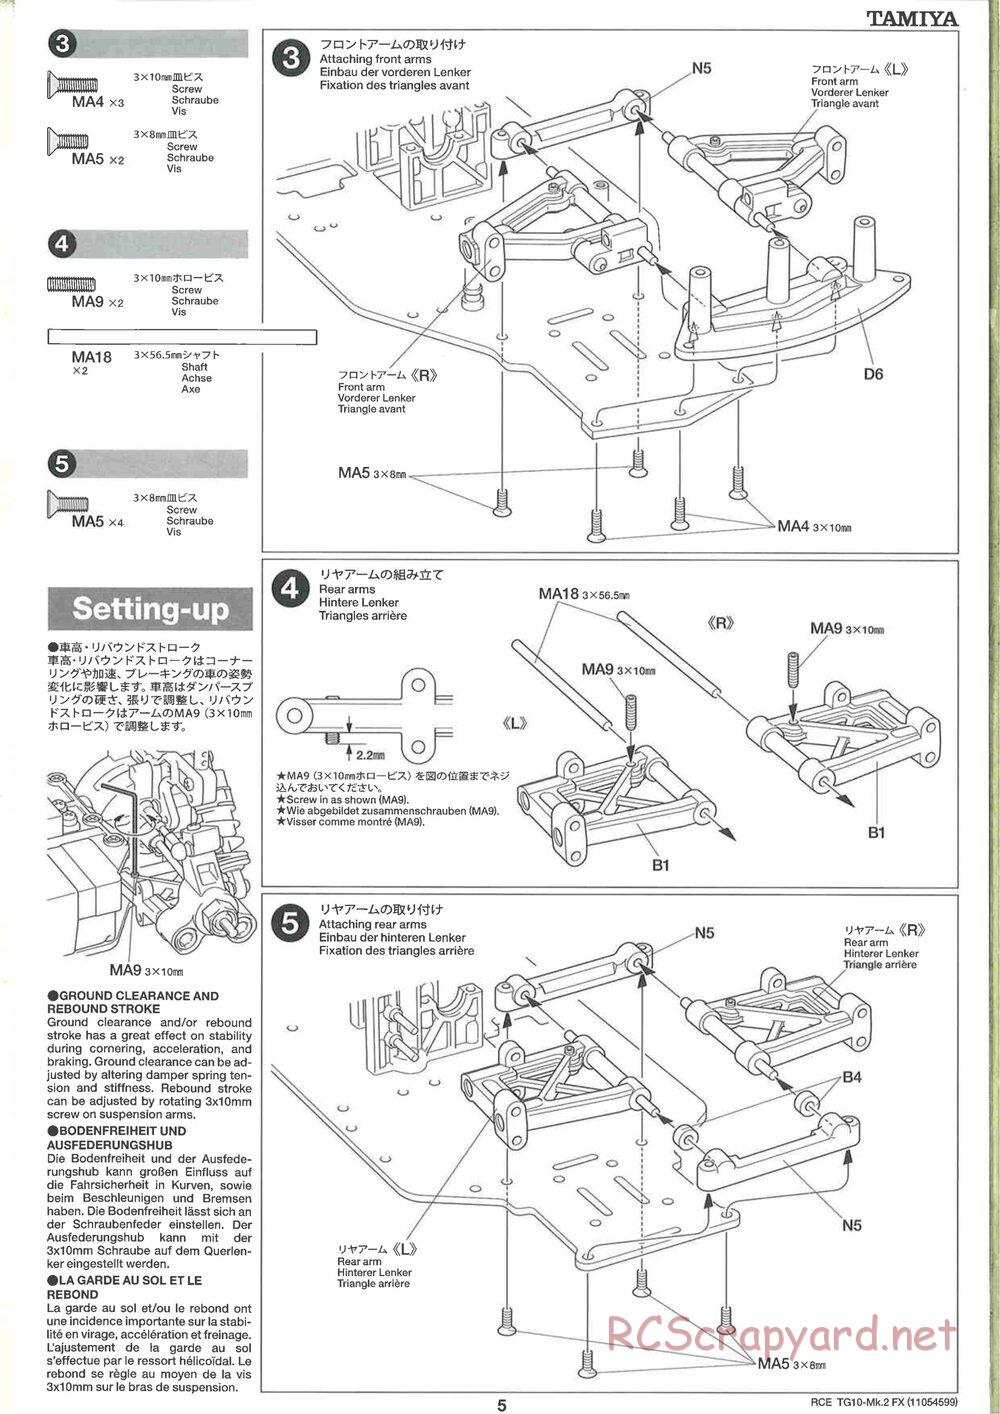 Tamiya - TG10 Mk.2 FX Chassis - Manual - Page 5